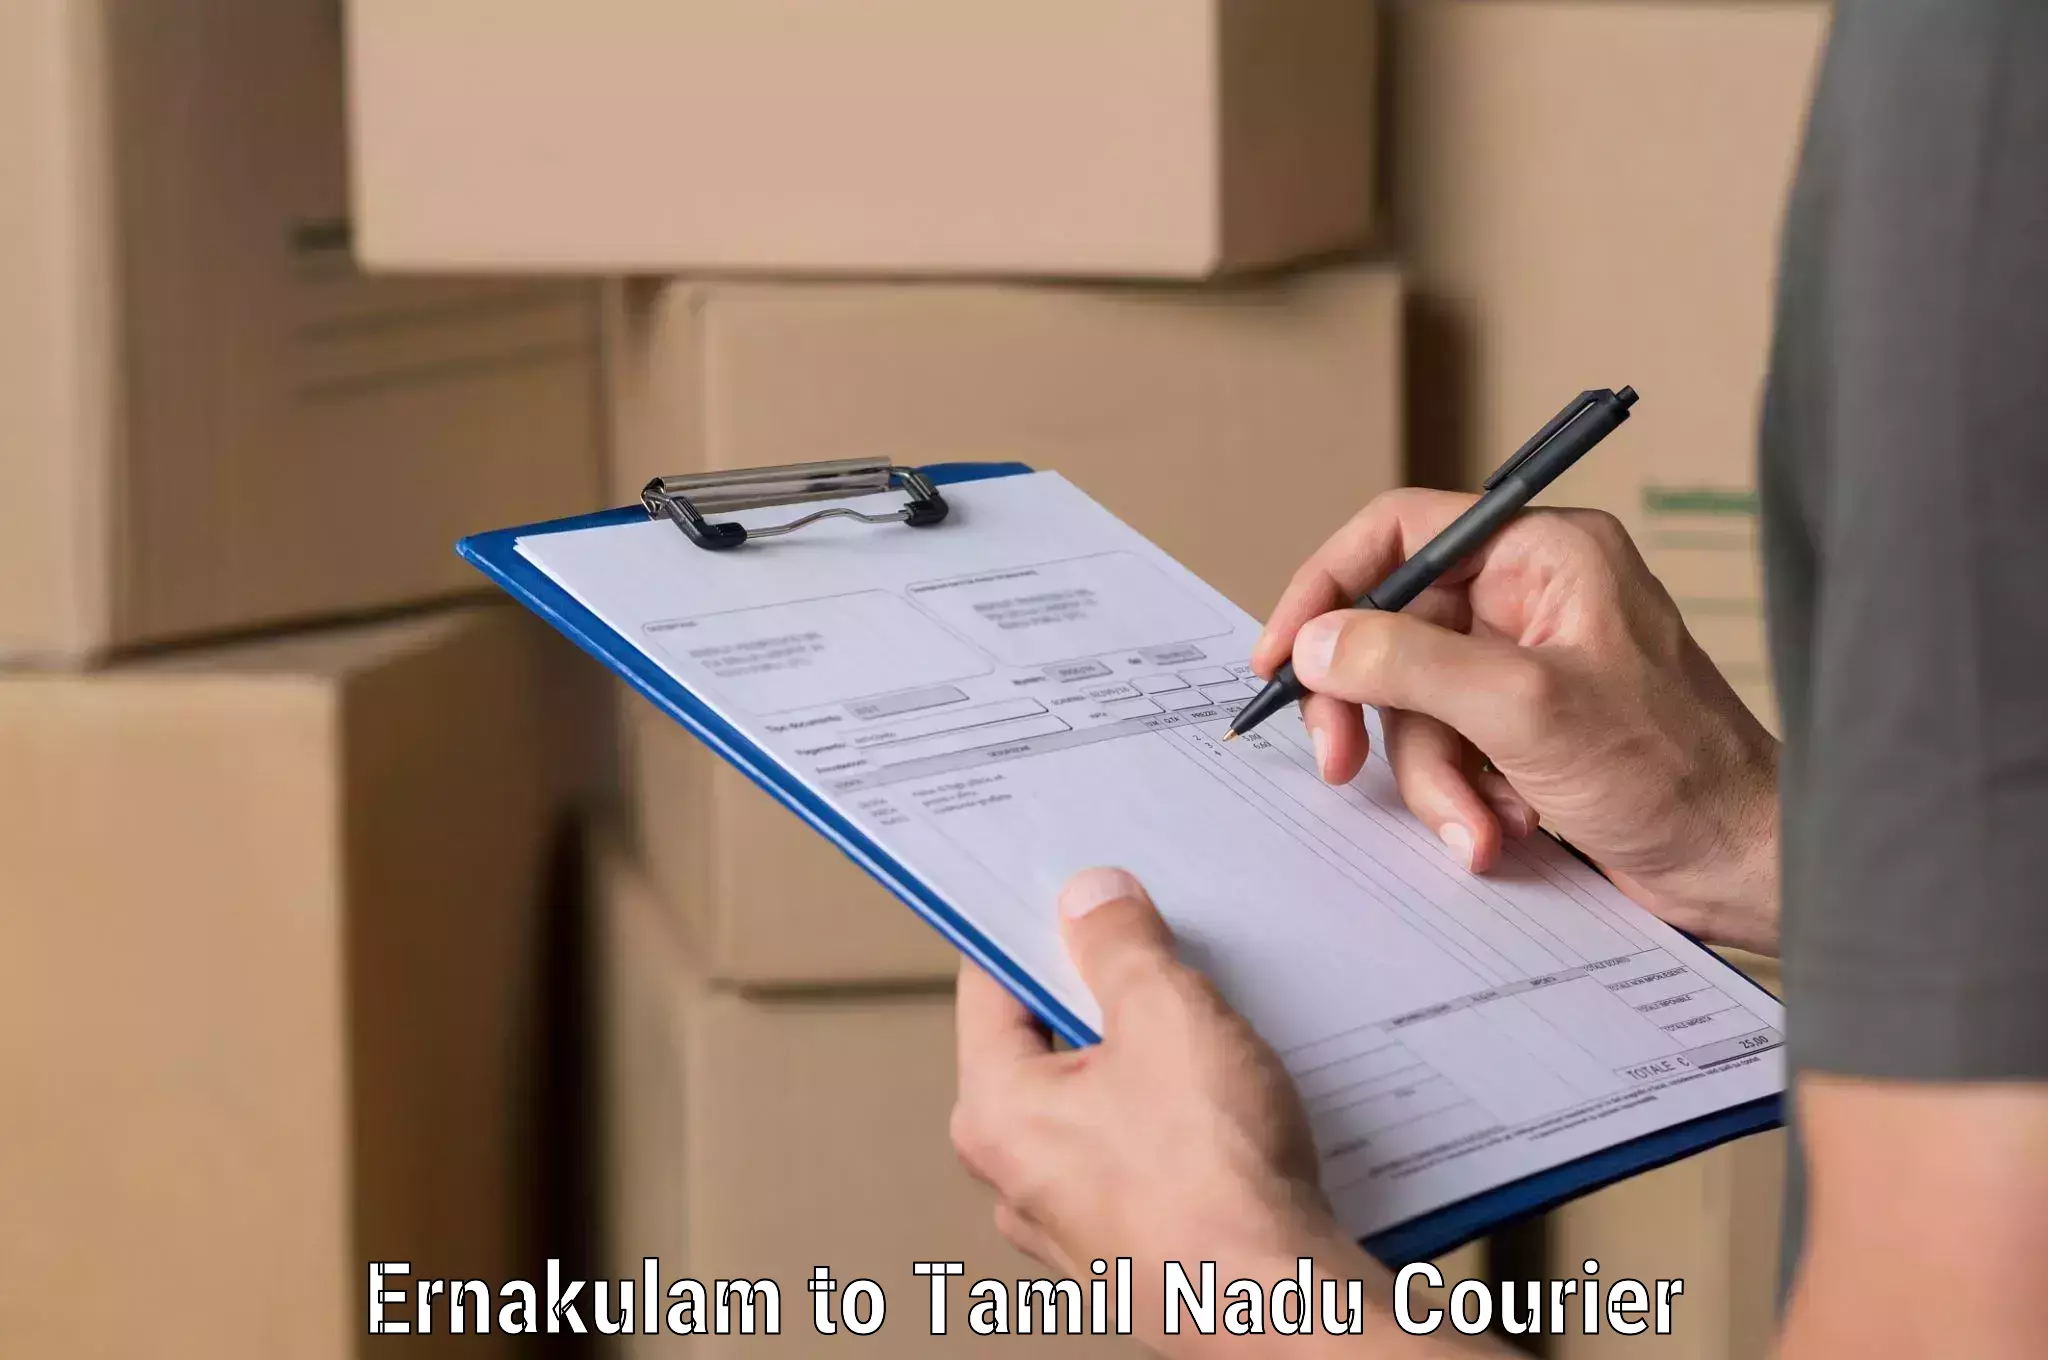 Global logistics network Ernakulam to Tambaram